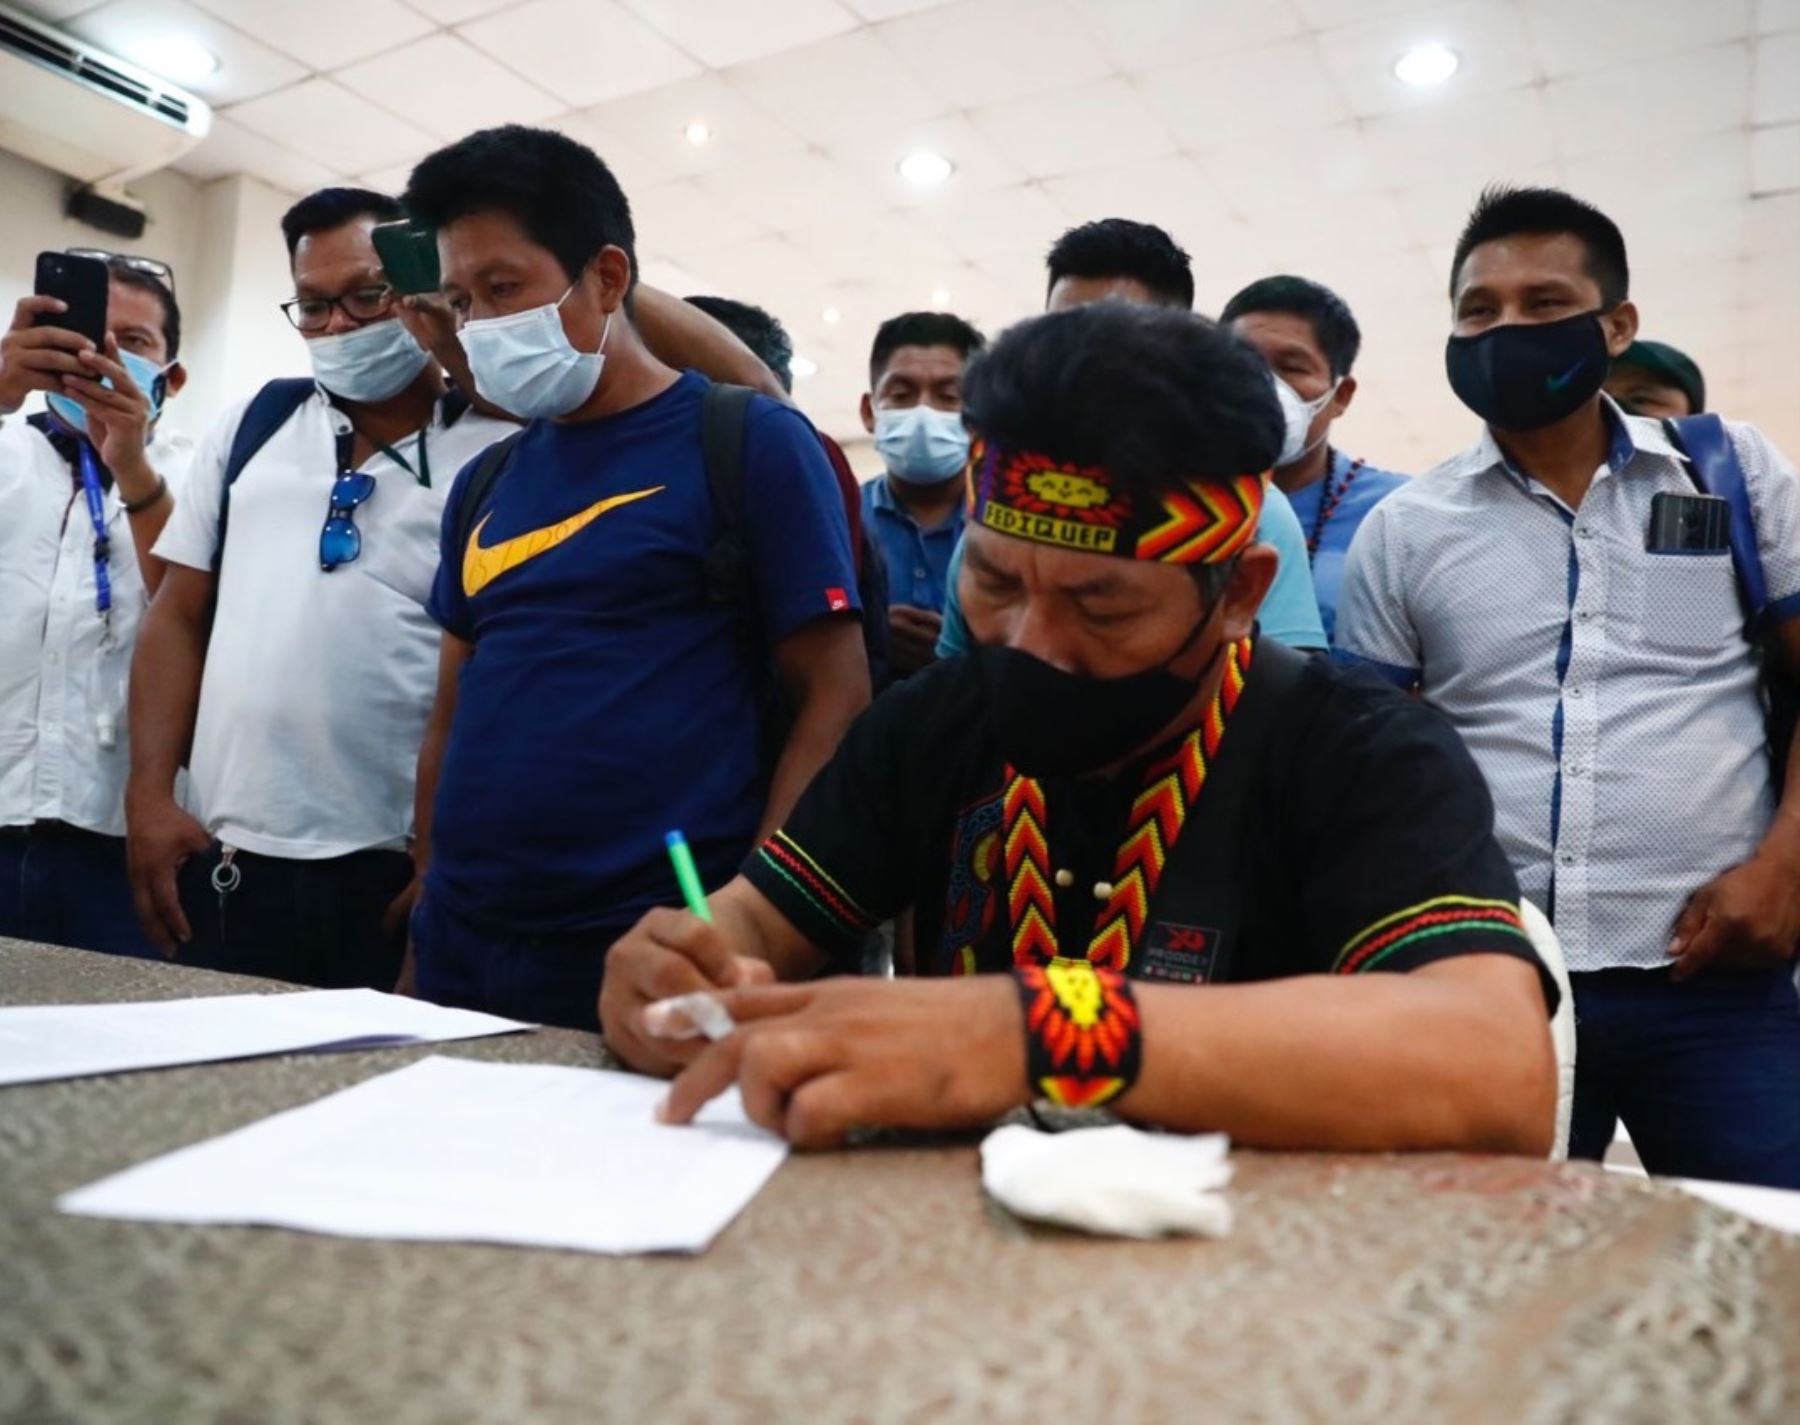 Representantes de organizaciones indígenas y funcionarios de Perupetro firmaron la adenda del proceso de consulta previa del Lote 192, ubicado en Loreto, resaltó el Ministerio de Energía y Minas. ANDINA/Difusión